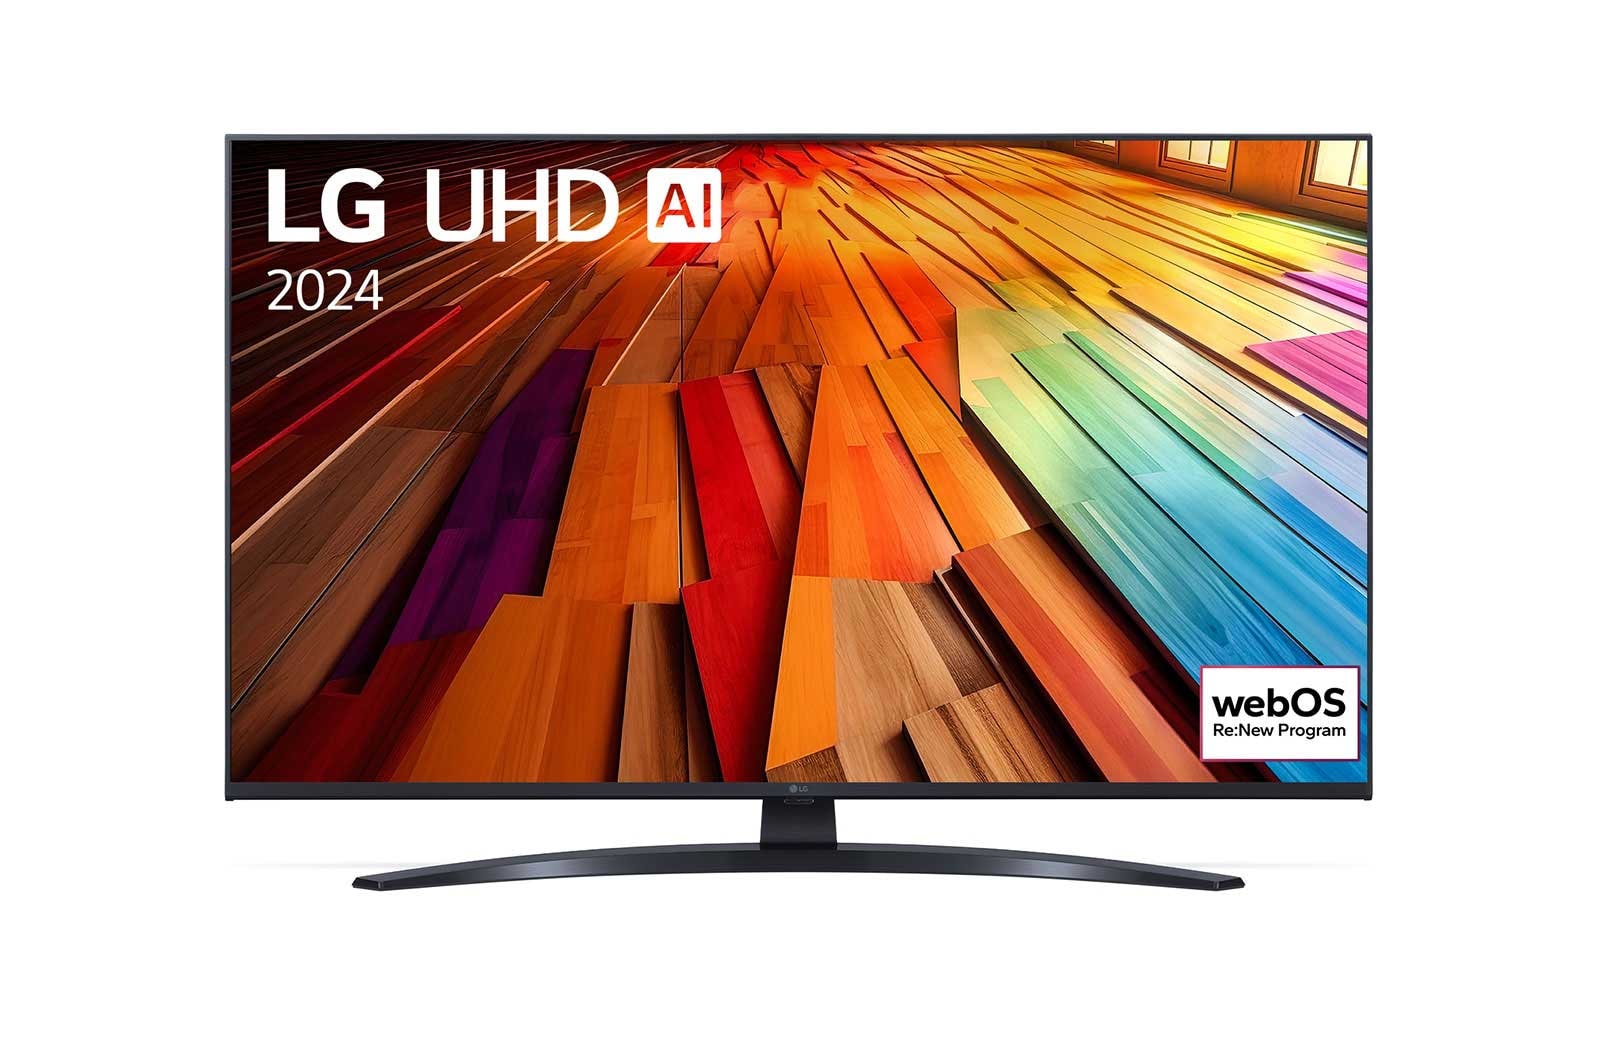 LG 43" LG UHD AI UT81 4K Smart TV 2024, 43UT81006LA